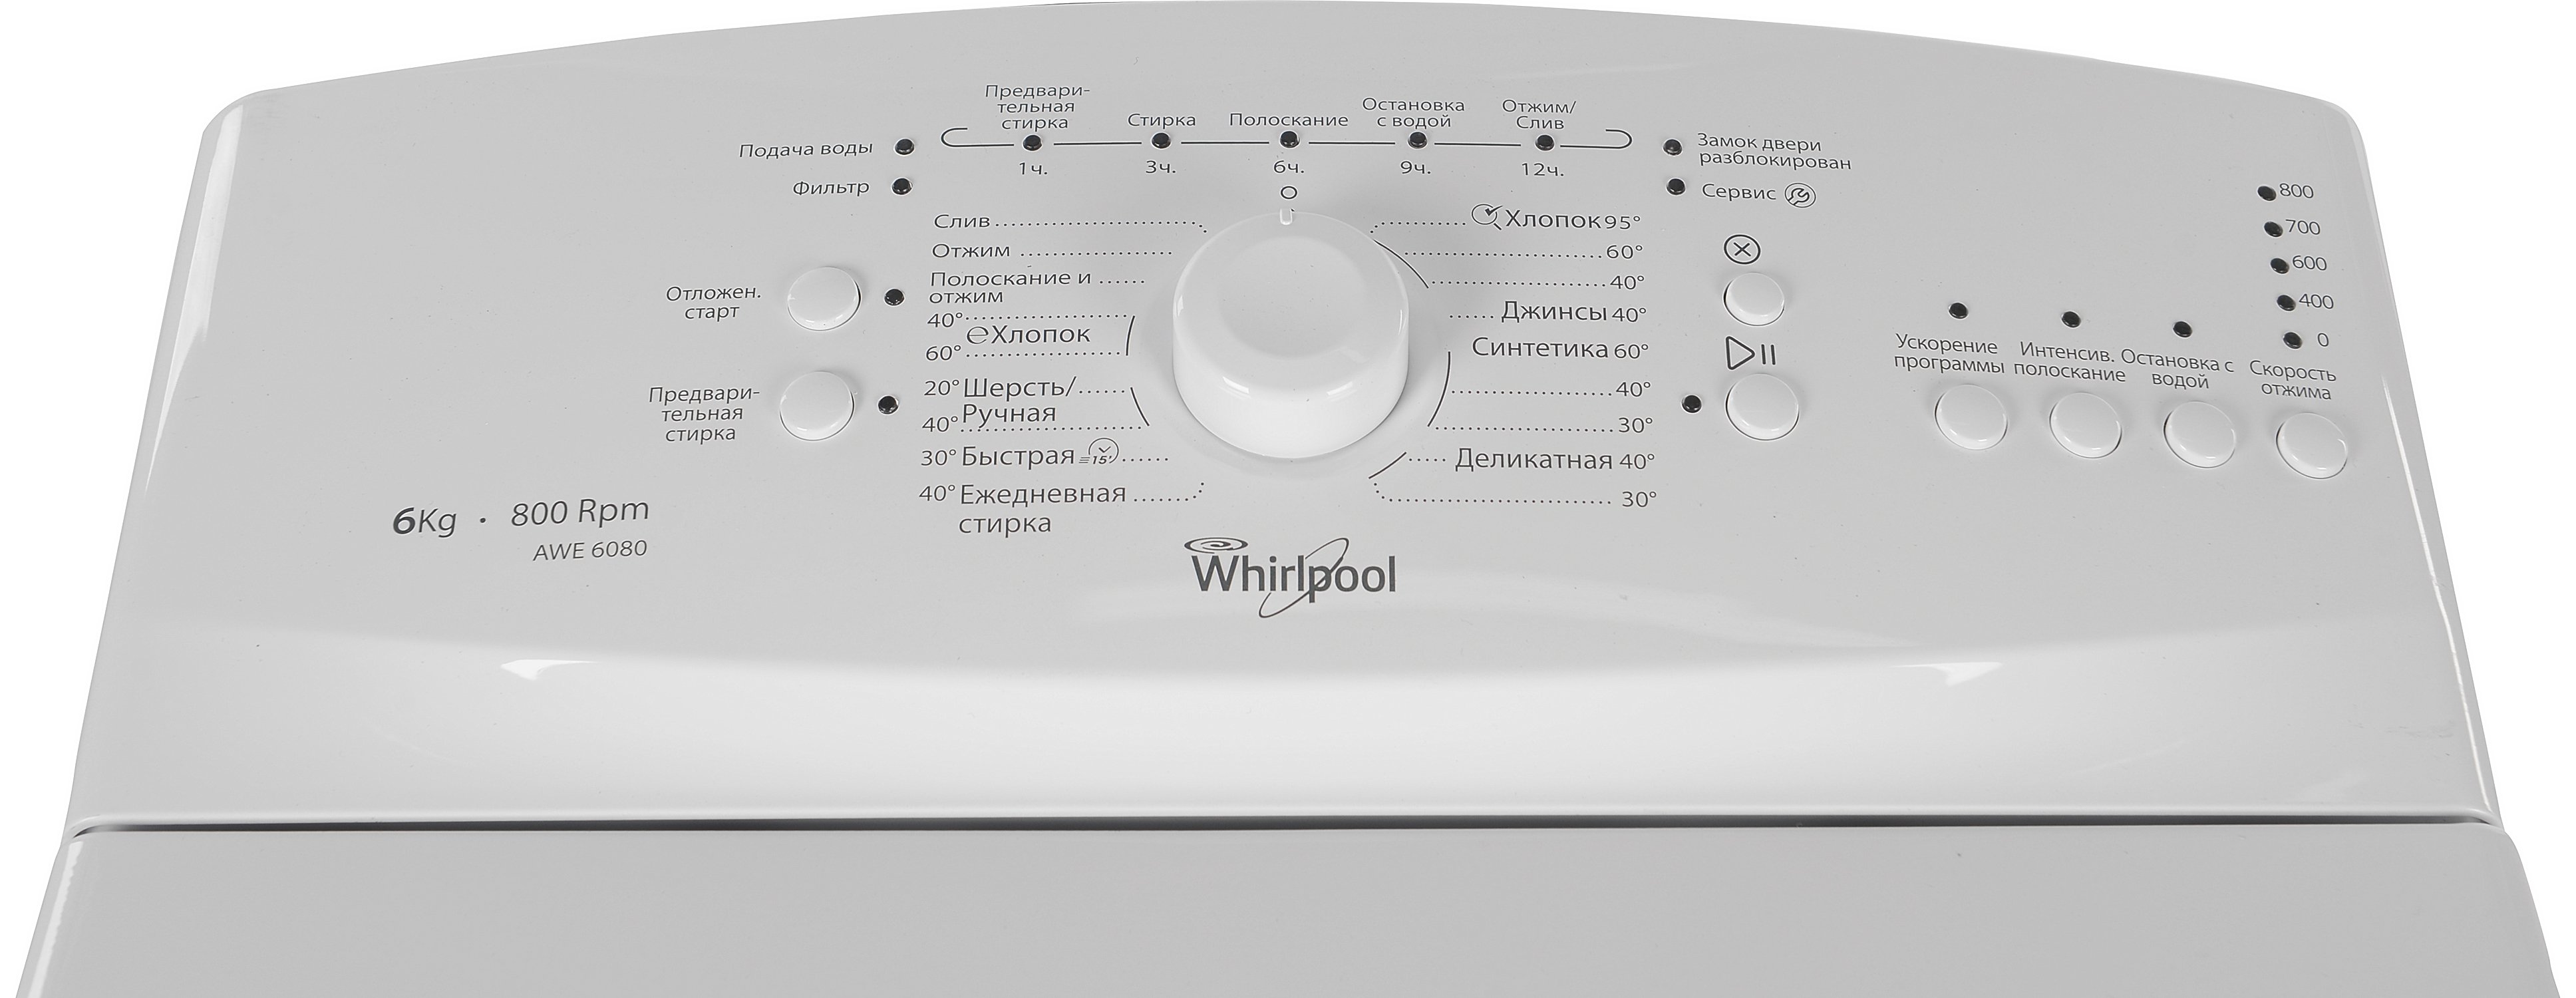 Вертикальная машинка whirlpool. Стиральная машина Whirlpool awe 66710. Whirlpool awe 6080. Стиральная машина Whirlpool awe 6080. Вирпул awe 6080.